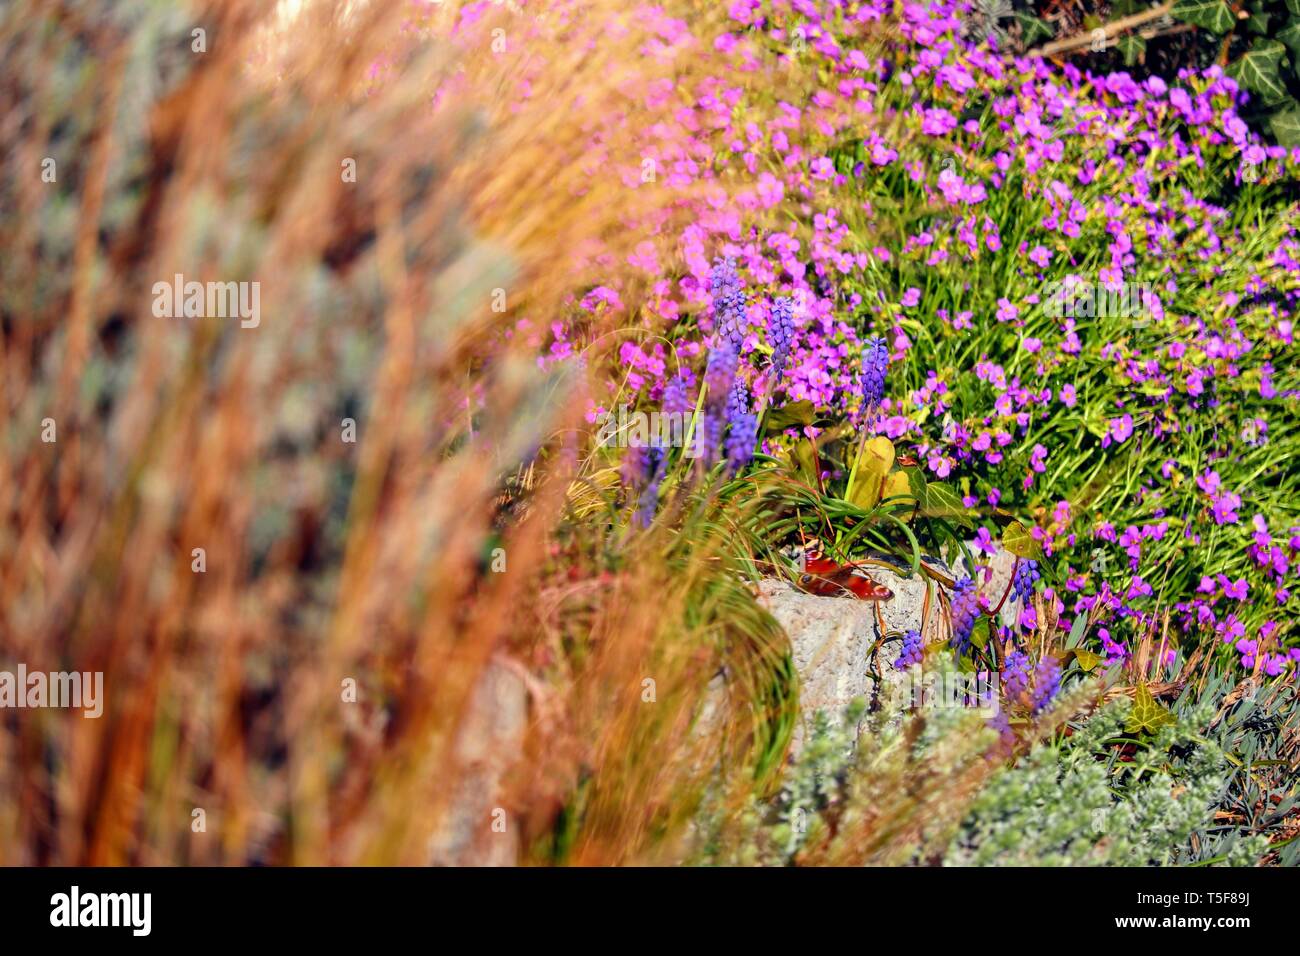 purple aubretia groundcover flower Stock Photo